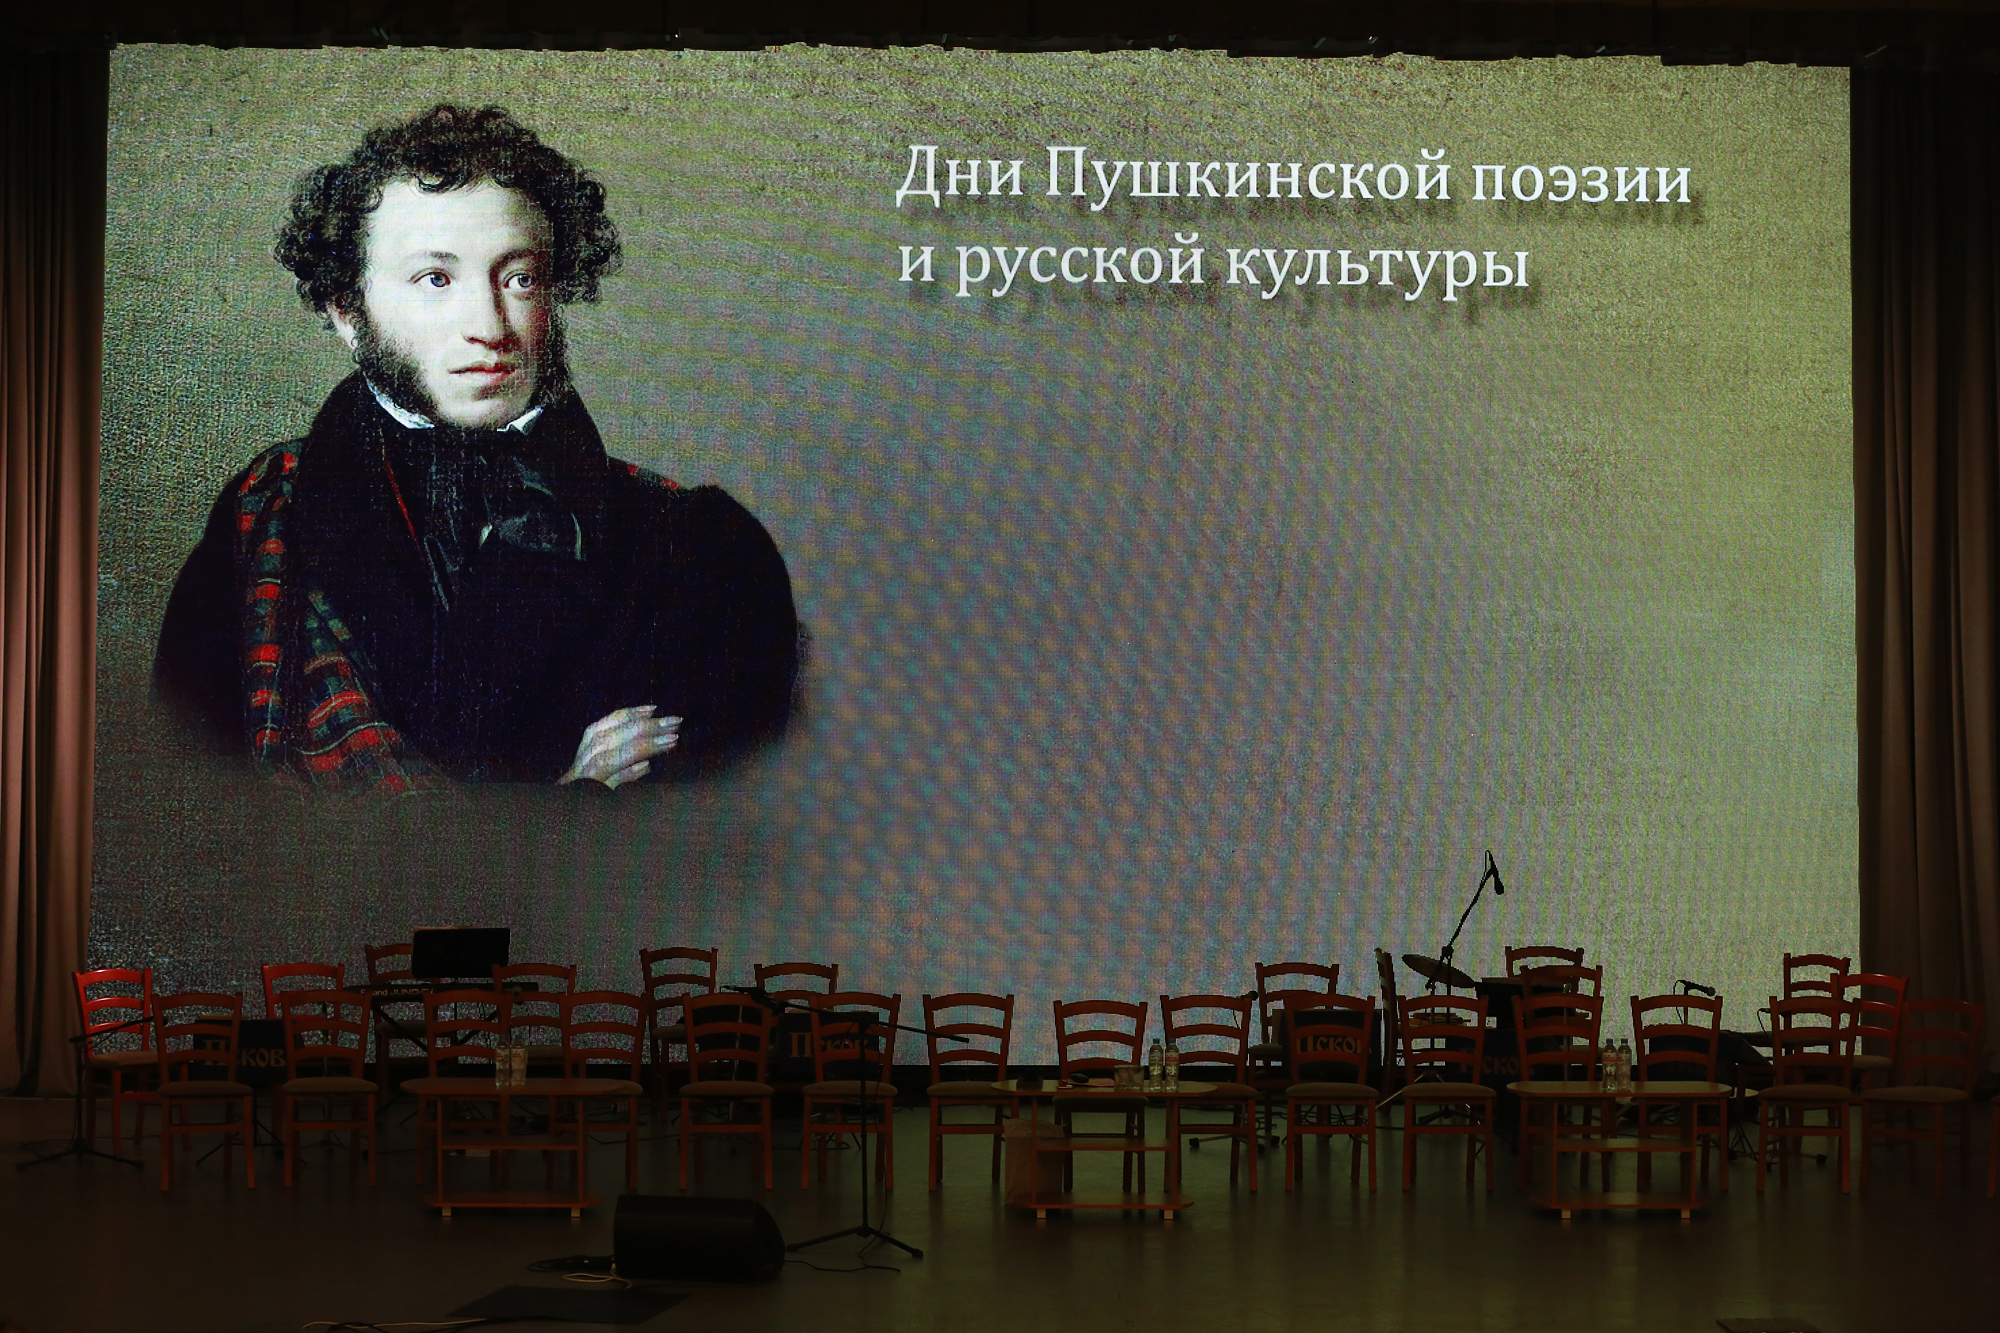 Пушкинский поэтический фестиваль